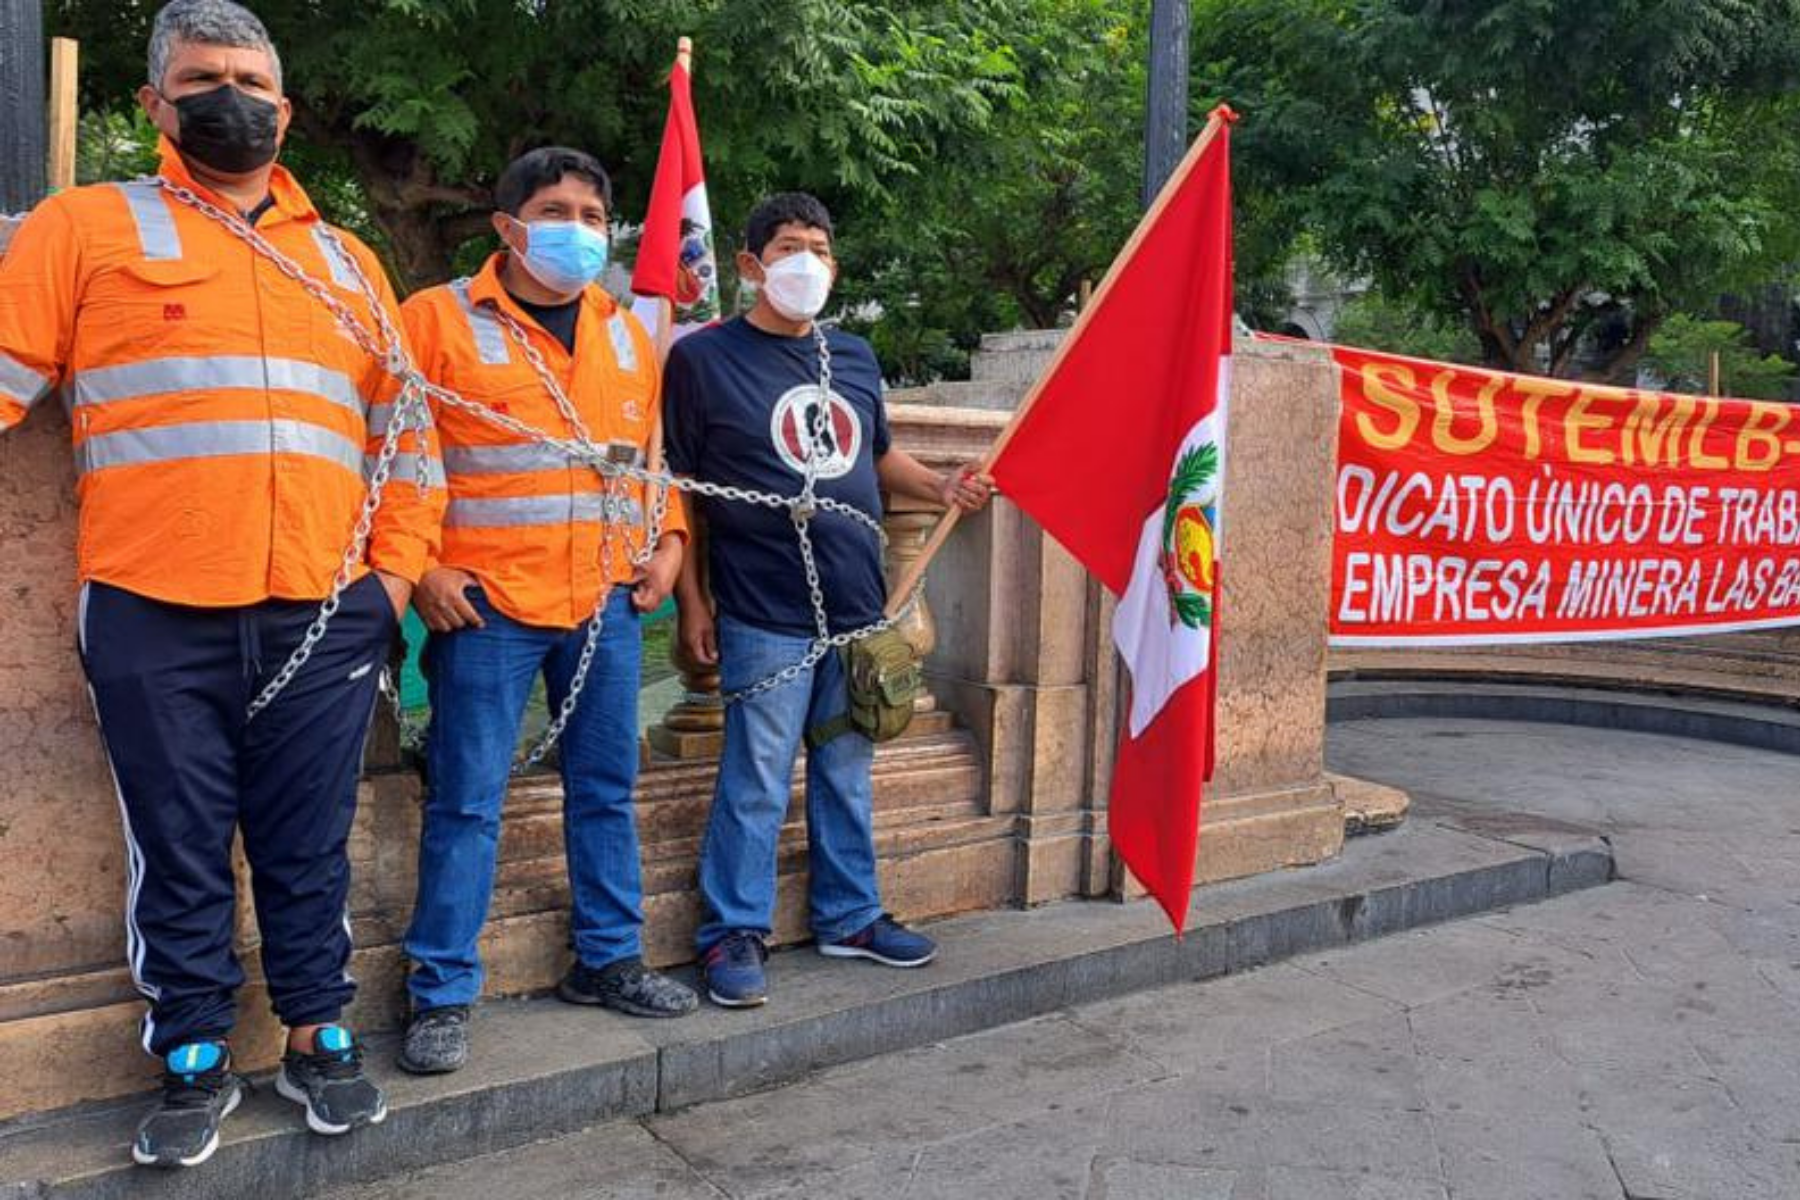 Trabajadores realizaron un plantón en la Plaza San Martín. |Foto: Sindicato Único de Trabajadores de la Empresa Minera Las Bambas